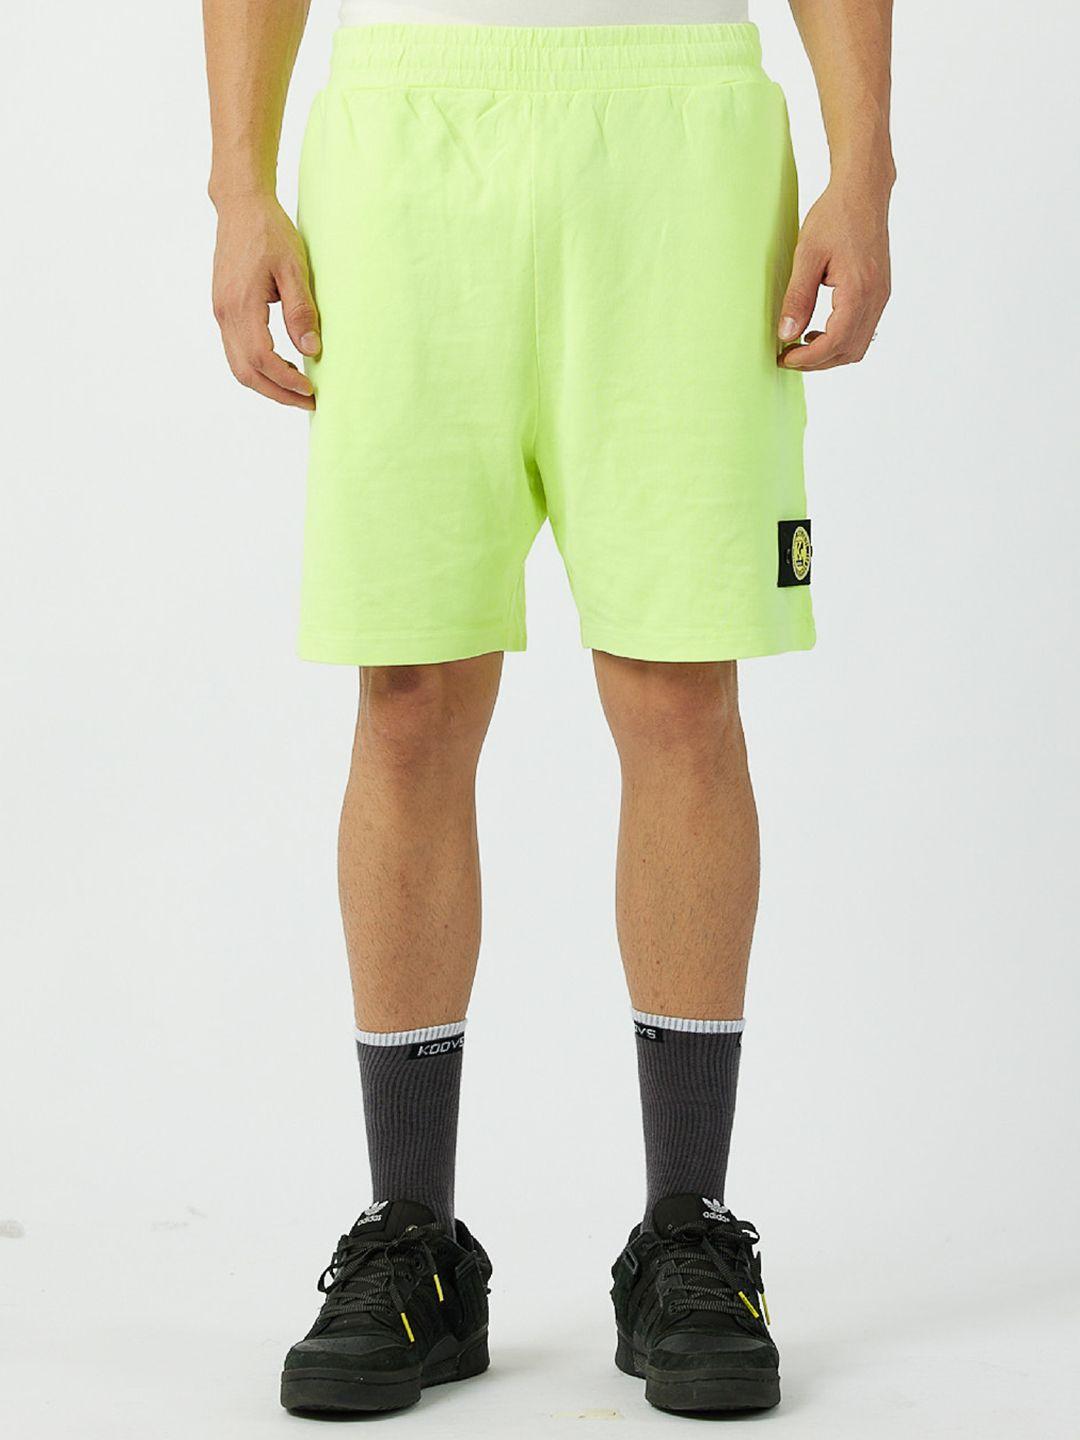 koovs men mid-rise cotton sports shorts